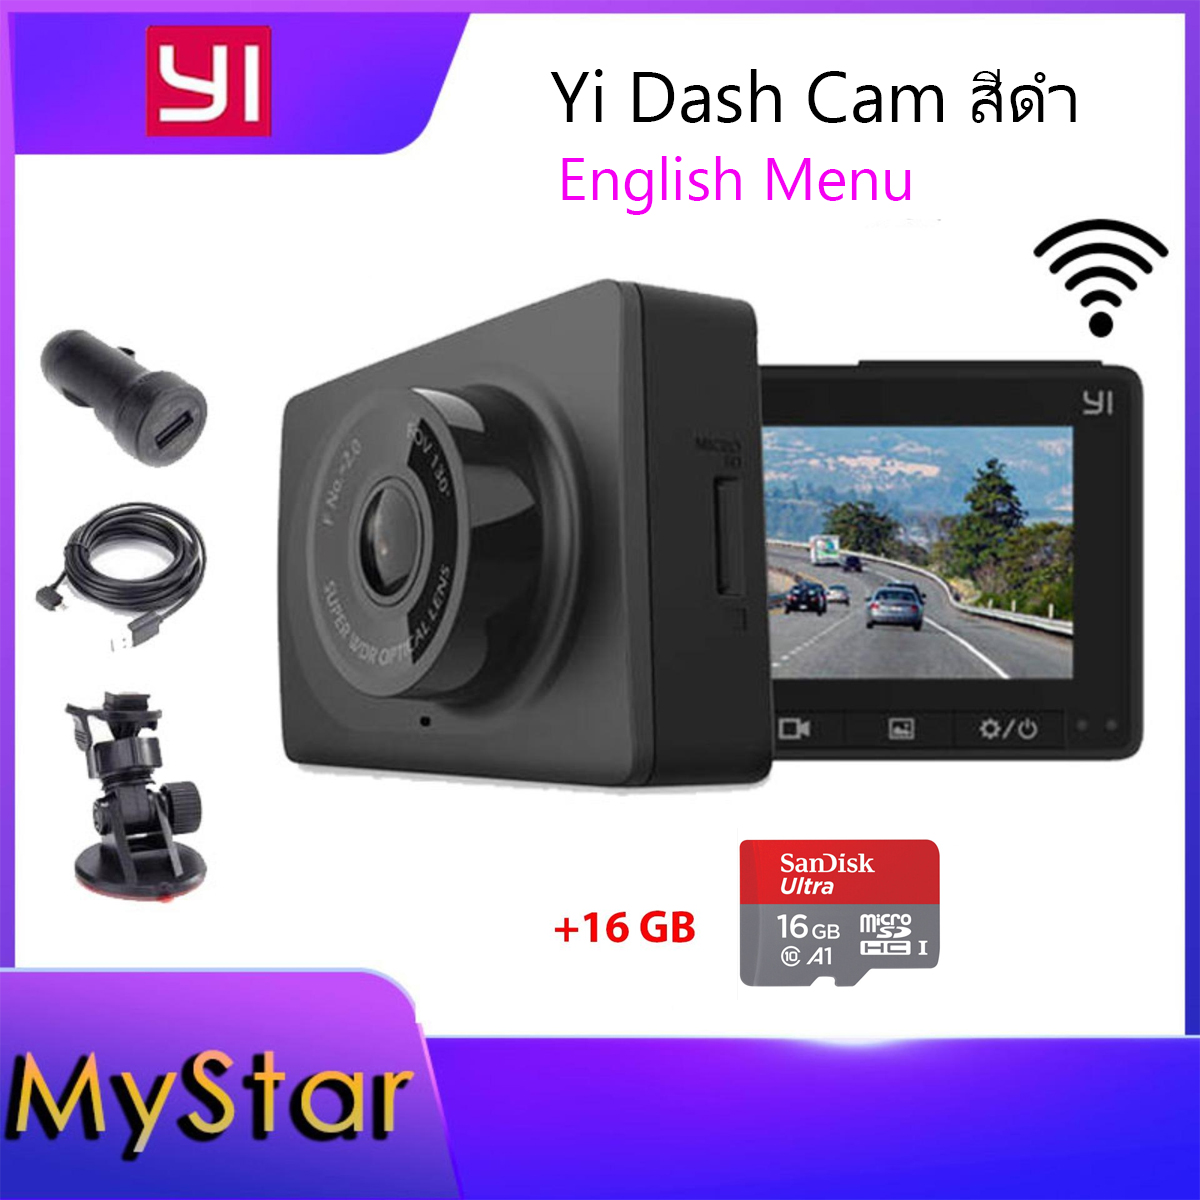 กล้องติดรถยนต์ Yi Car Dash Cam Camera Action cam (เมนูภาษาอังกฤษ) English Menu Full HD 1080p car WIFI DVR F 2.0 มุมมอง 130 + Micro SD 16 GB